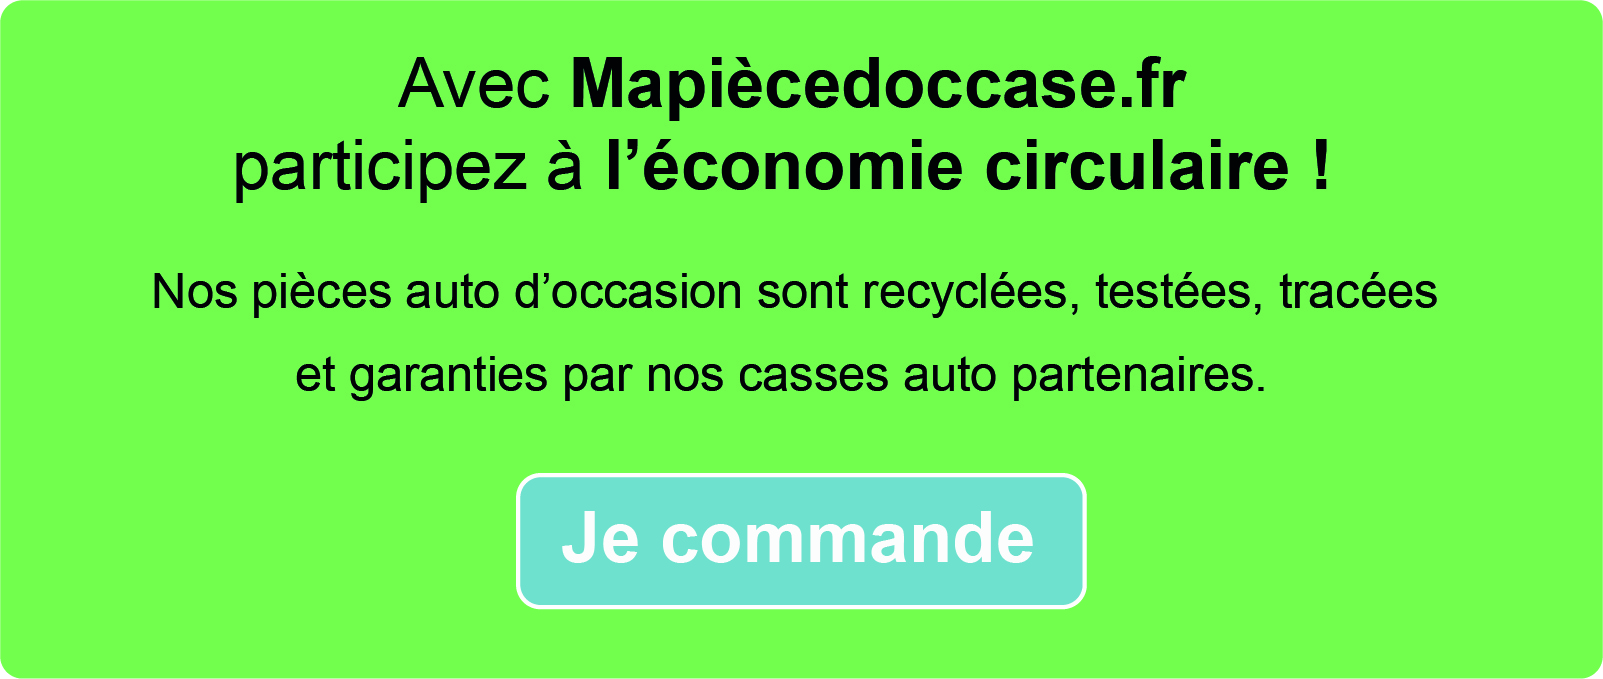 Participez à l'éocnomie circulaire en commandant sur Mapiècedoccase.fr